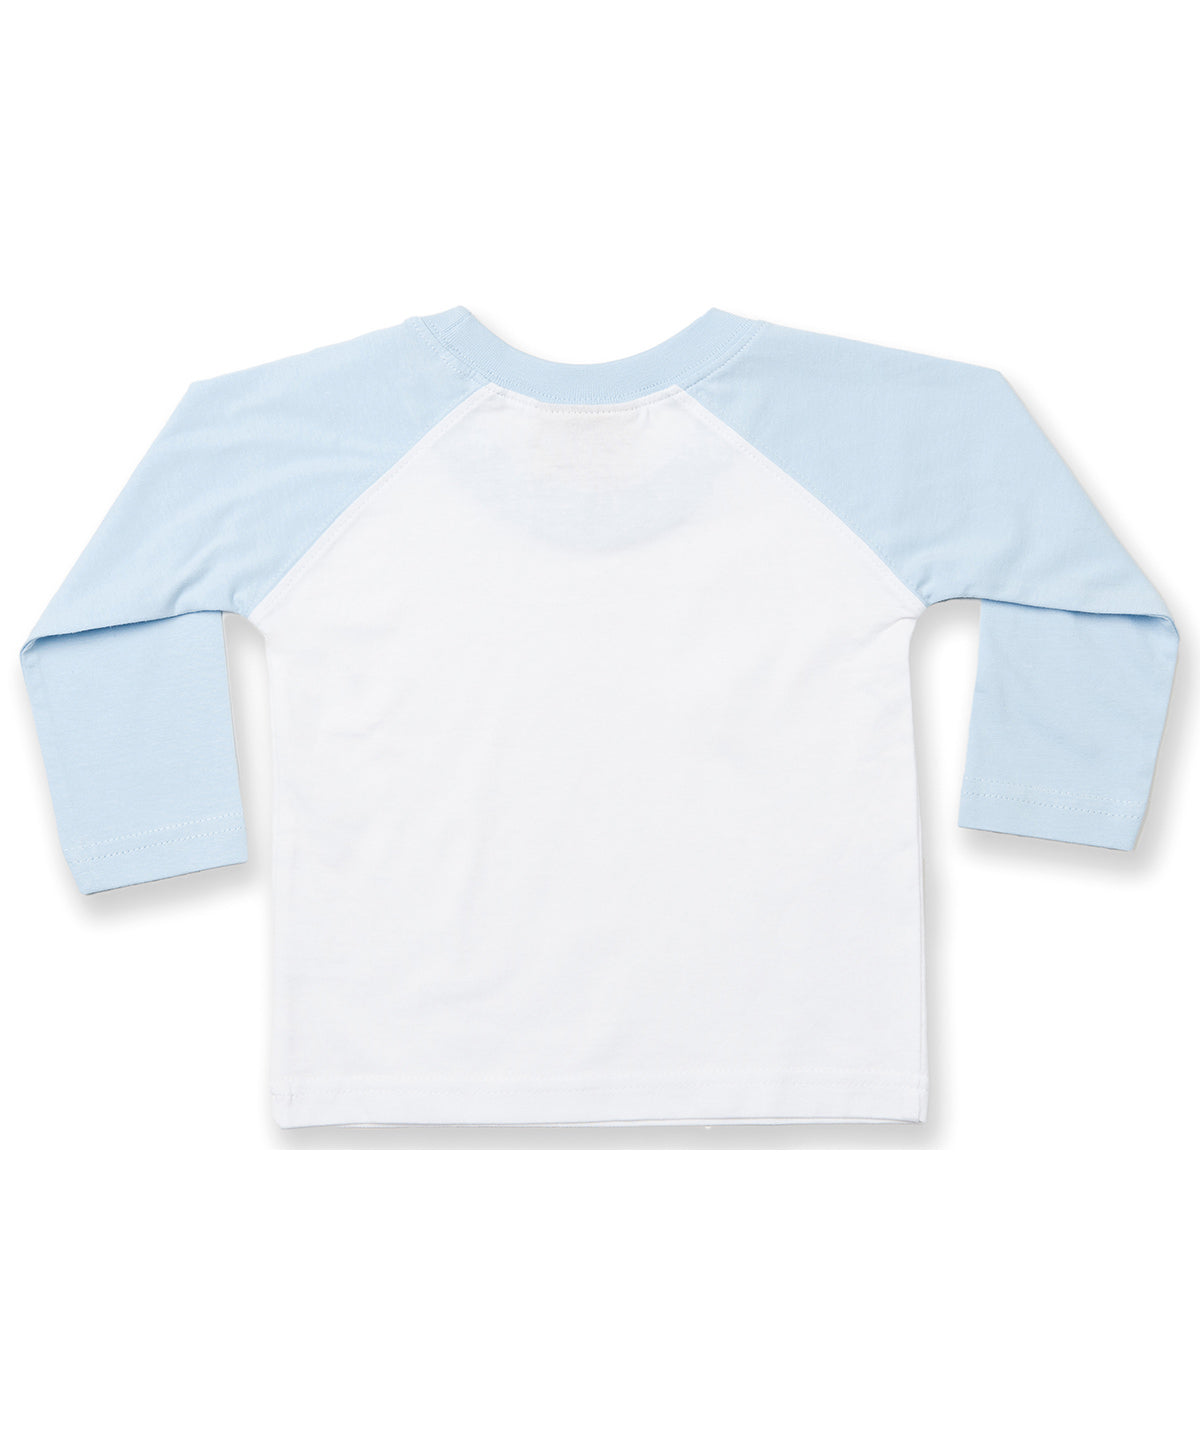 Personalised T-Shirts - White Larkwood Long sleeve baseball t-shirt